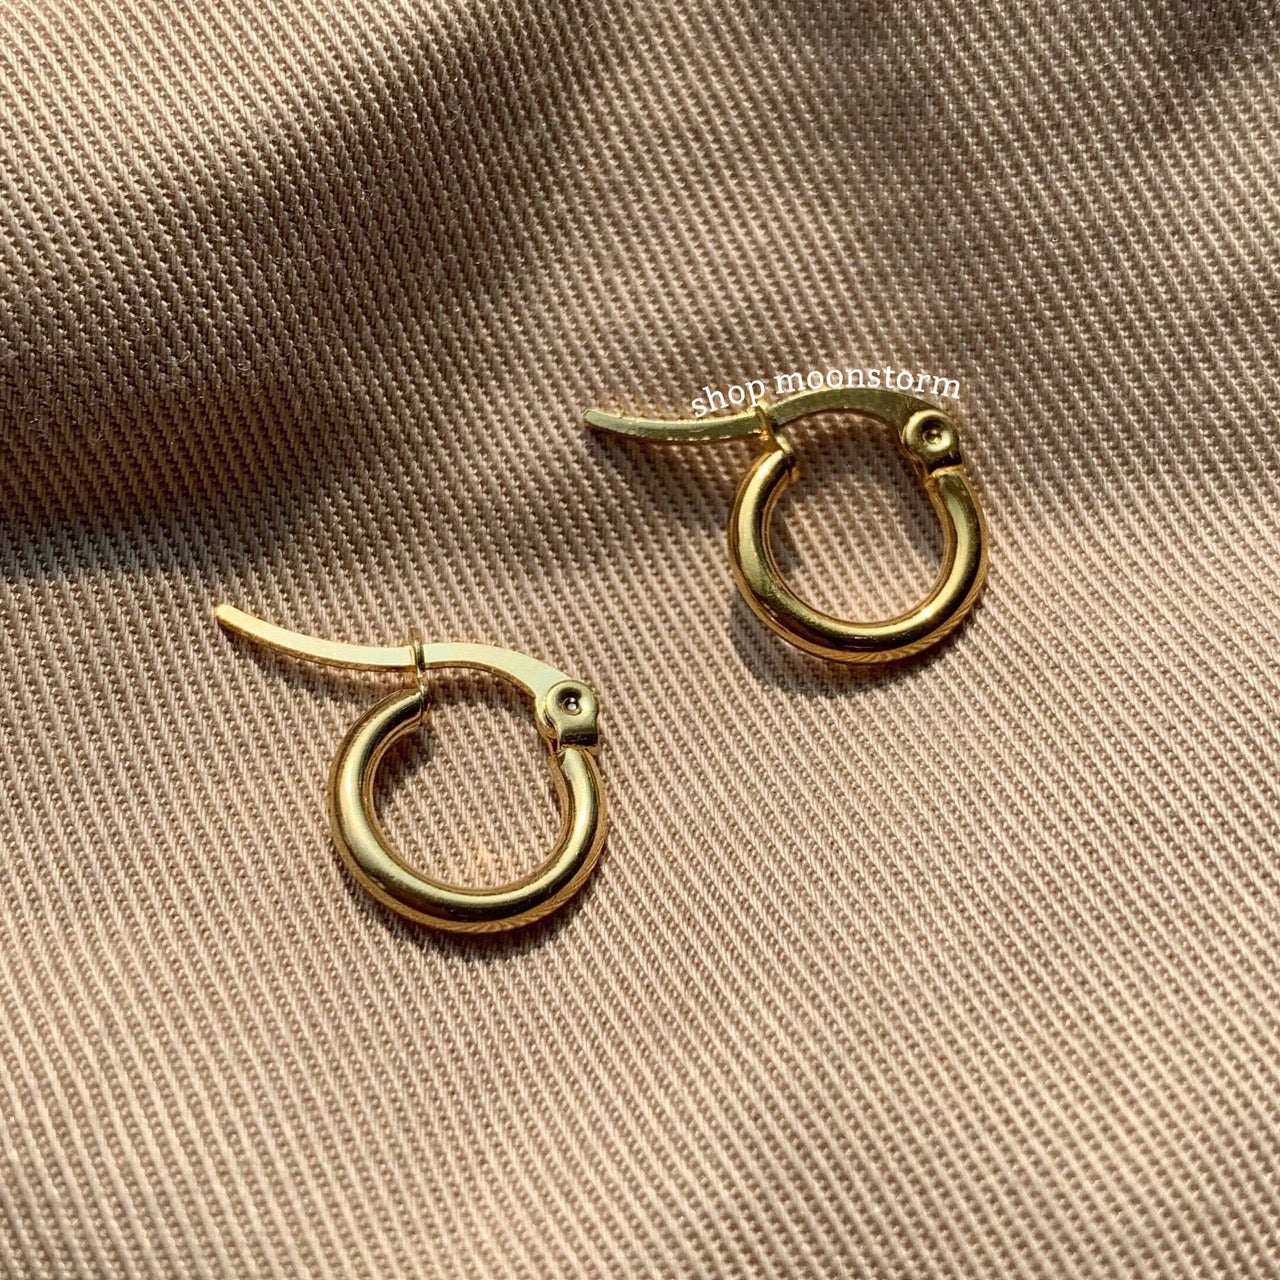 12mm Gold Hoop Earrings